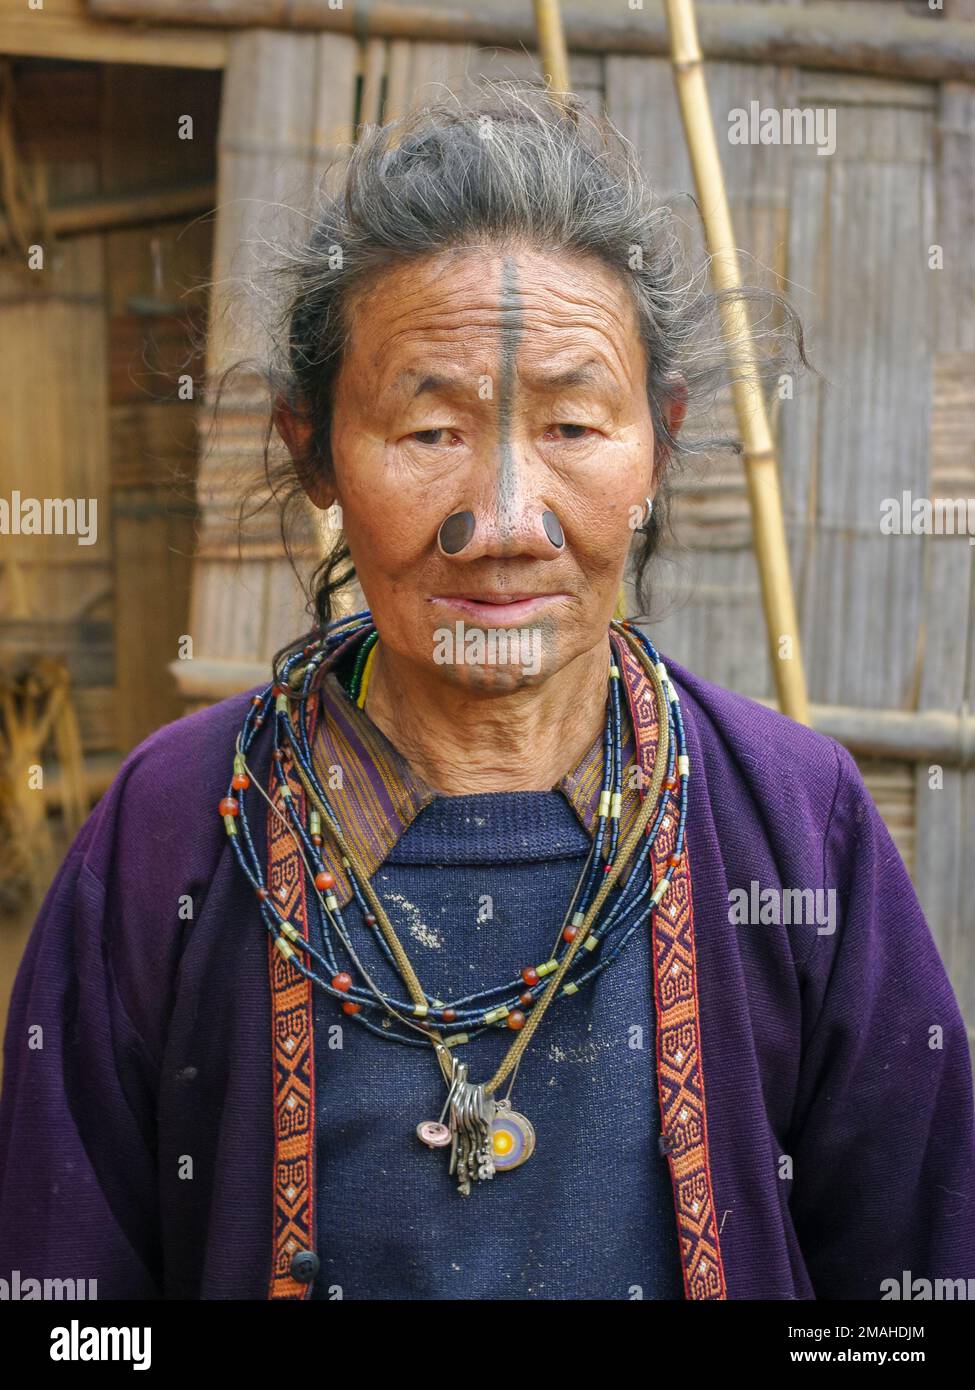 Ziro, Arunachal Pradesh, Inde - 02 24 2009 : Portrait de la vieille femme tribale d'Apatani avec tatouage facial traditionnel et prises de nez portant une robe typique Banque D'Images